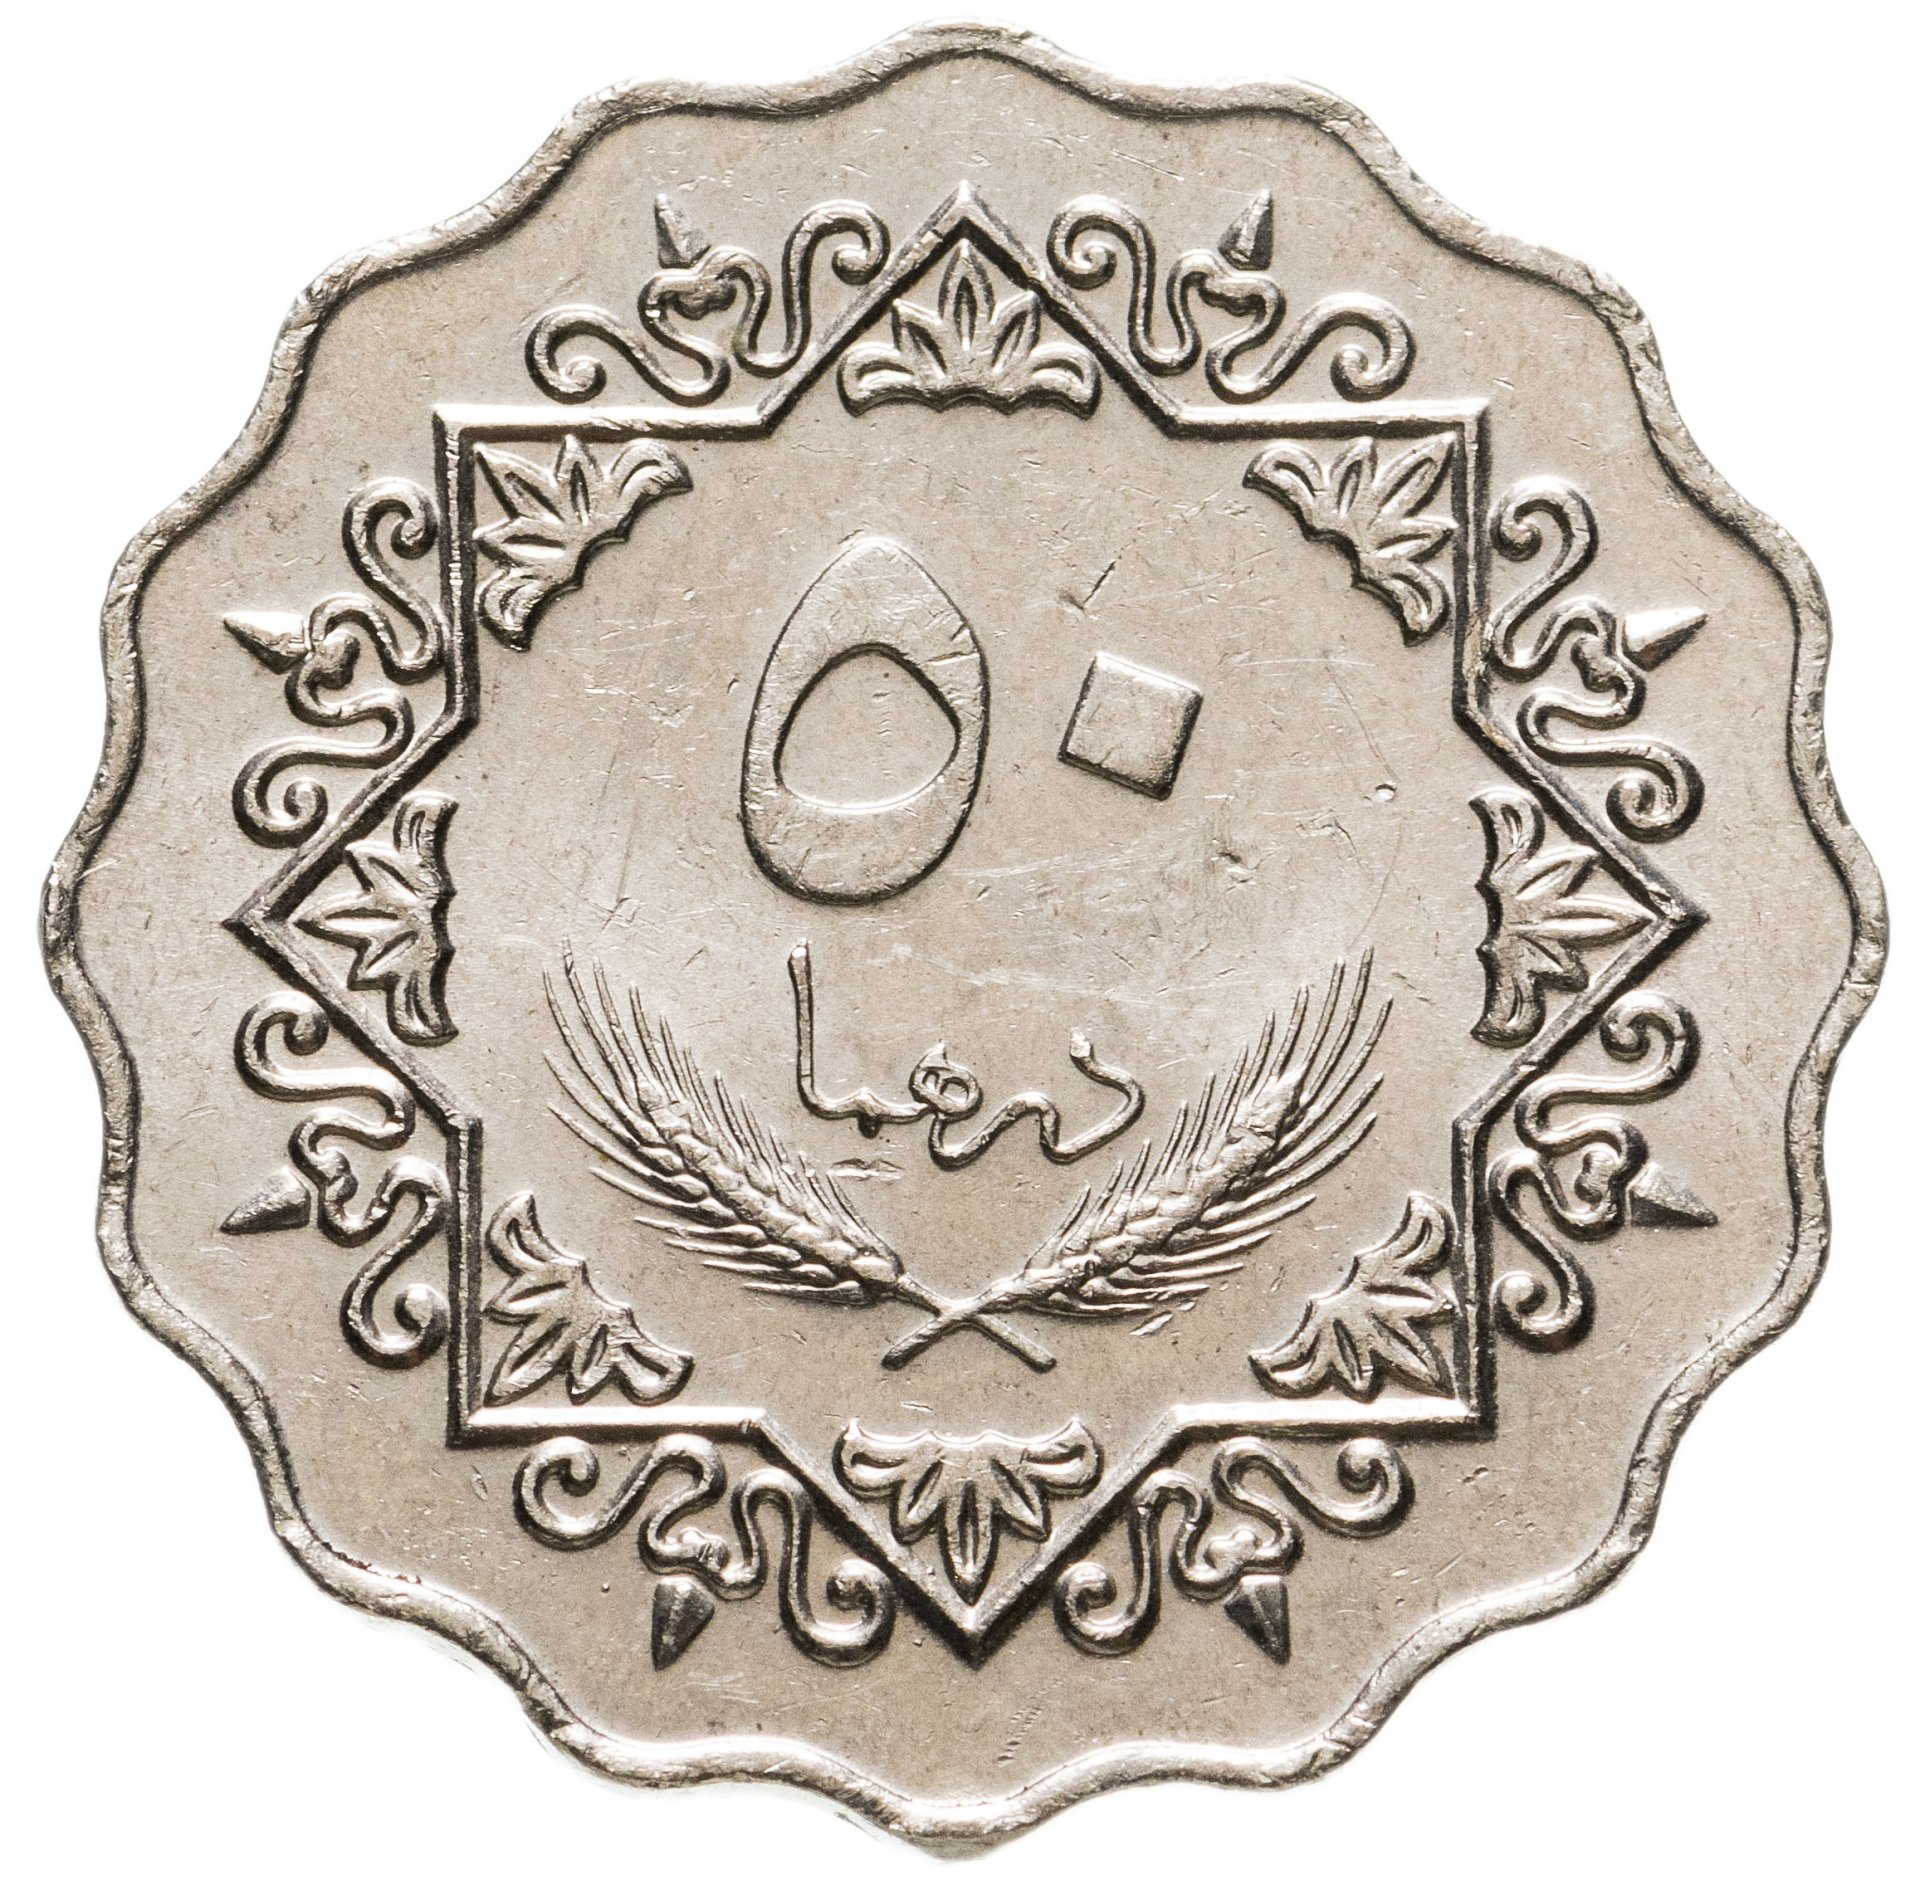 16 дирхам. Ливия 50 дирхамов 1979. Монета с арабской вязью 50. Монеты ливийской Джамахирии. Старинные арабские монеты.